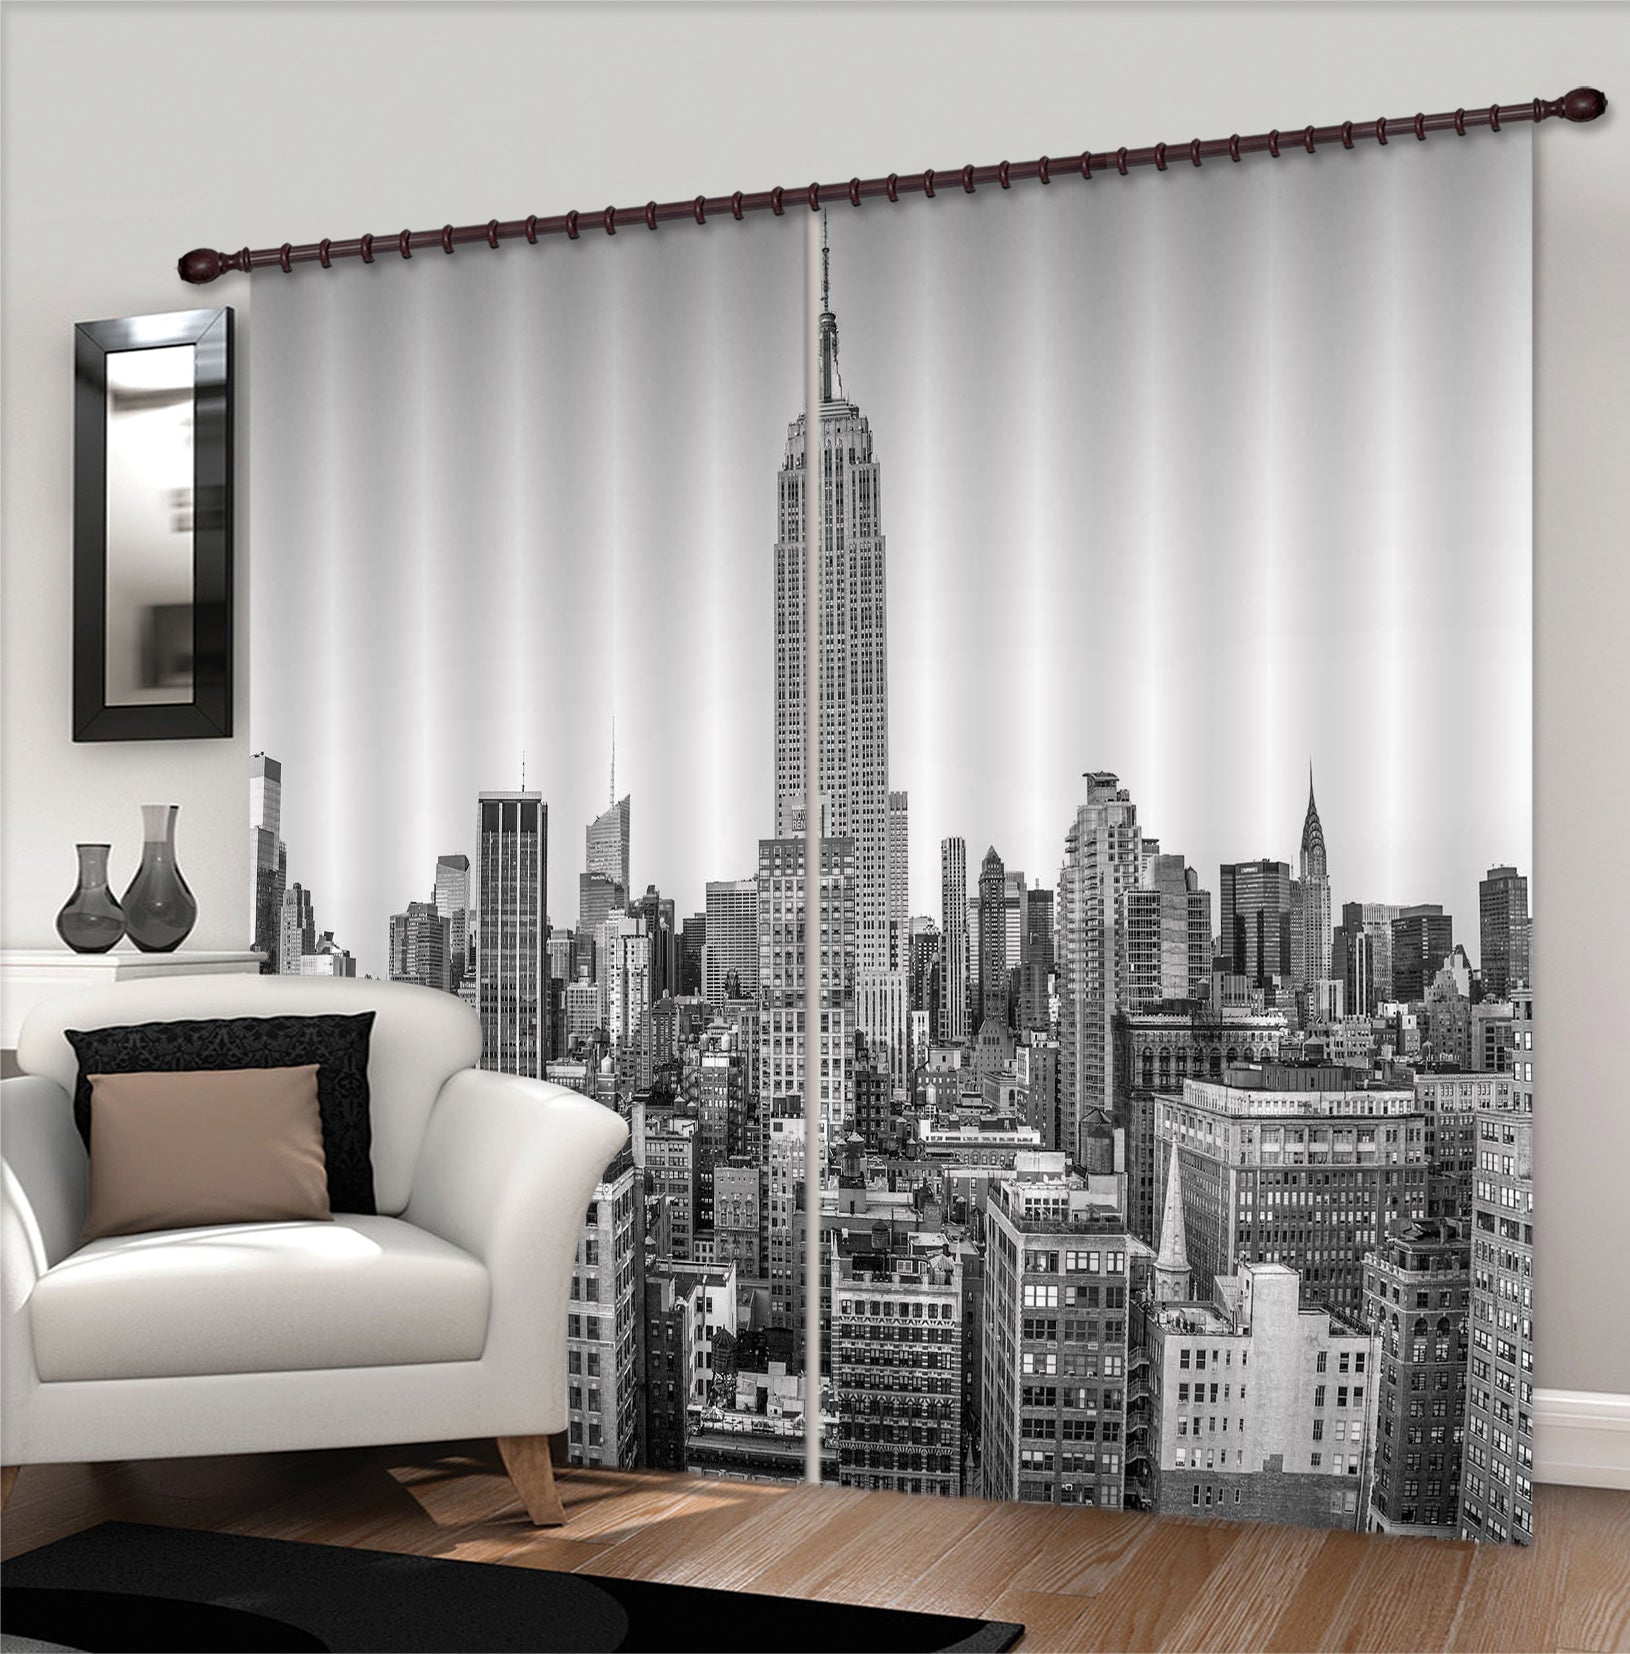 3D Sketch Building 018 Assaf Frank Curtain Curtains Drapes